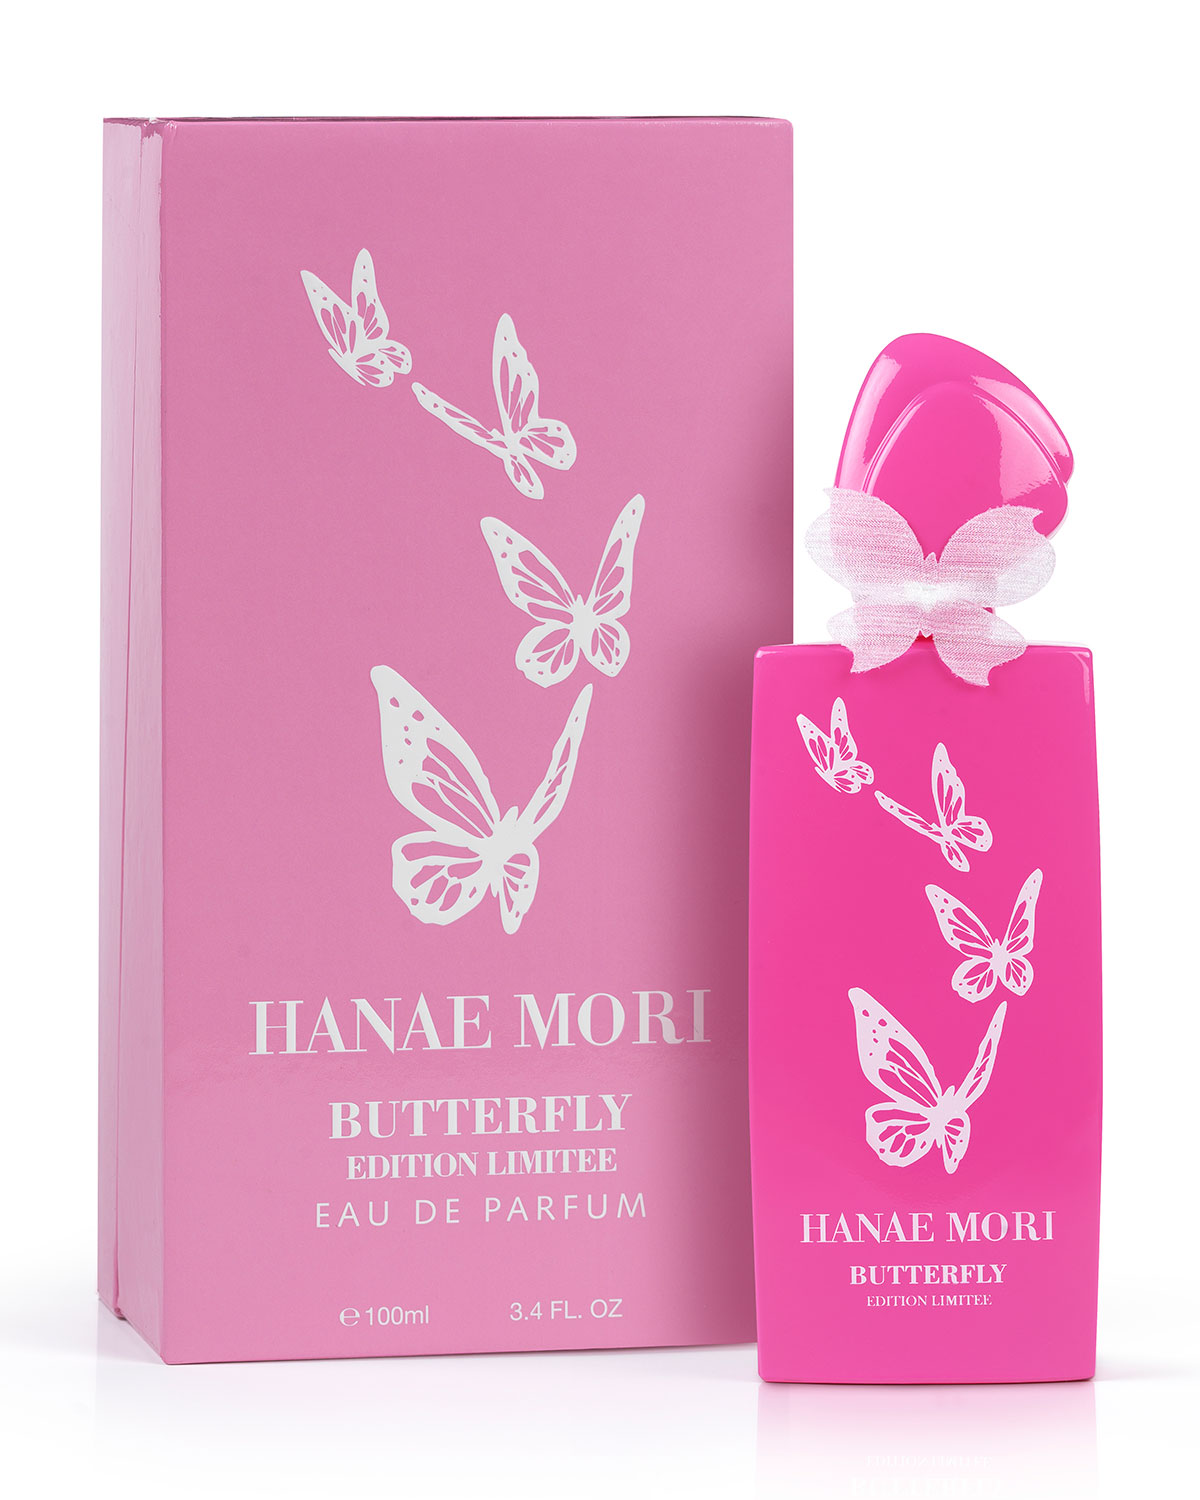 larger view hanae mori butterfly eau de parfum collection